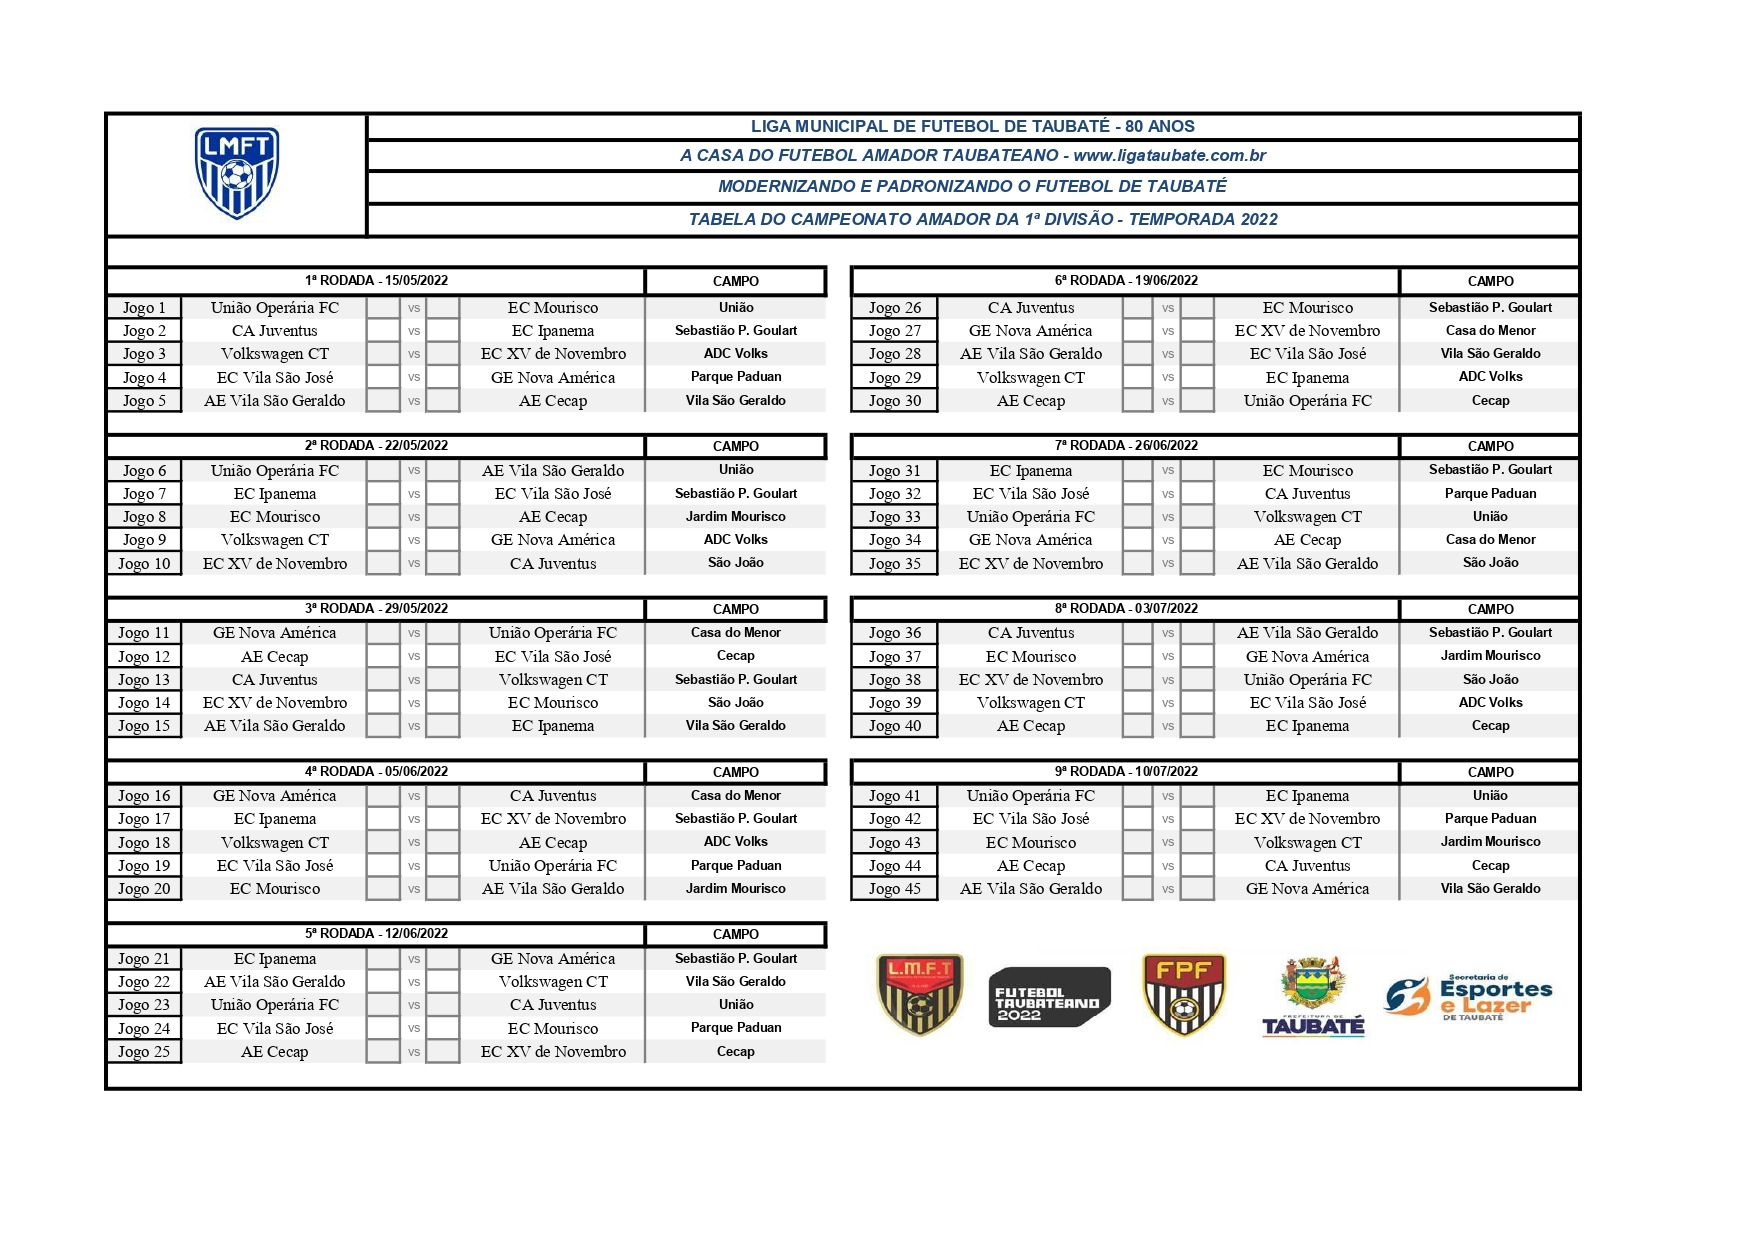 tabela completa do campeonato amador primeira divisão 2022